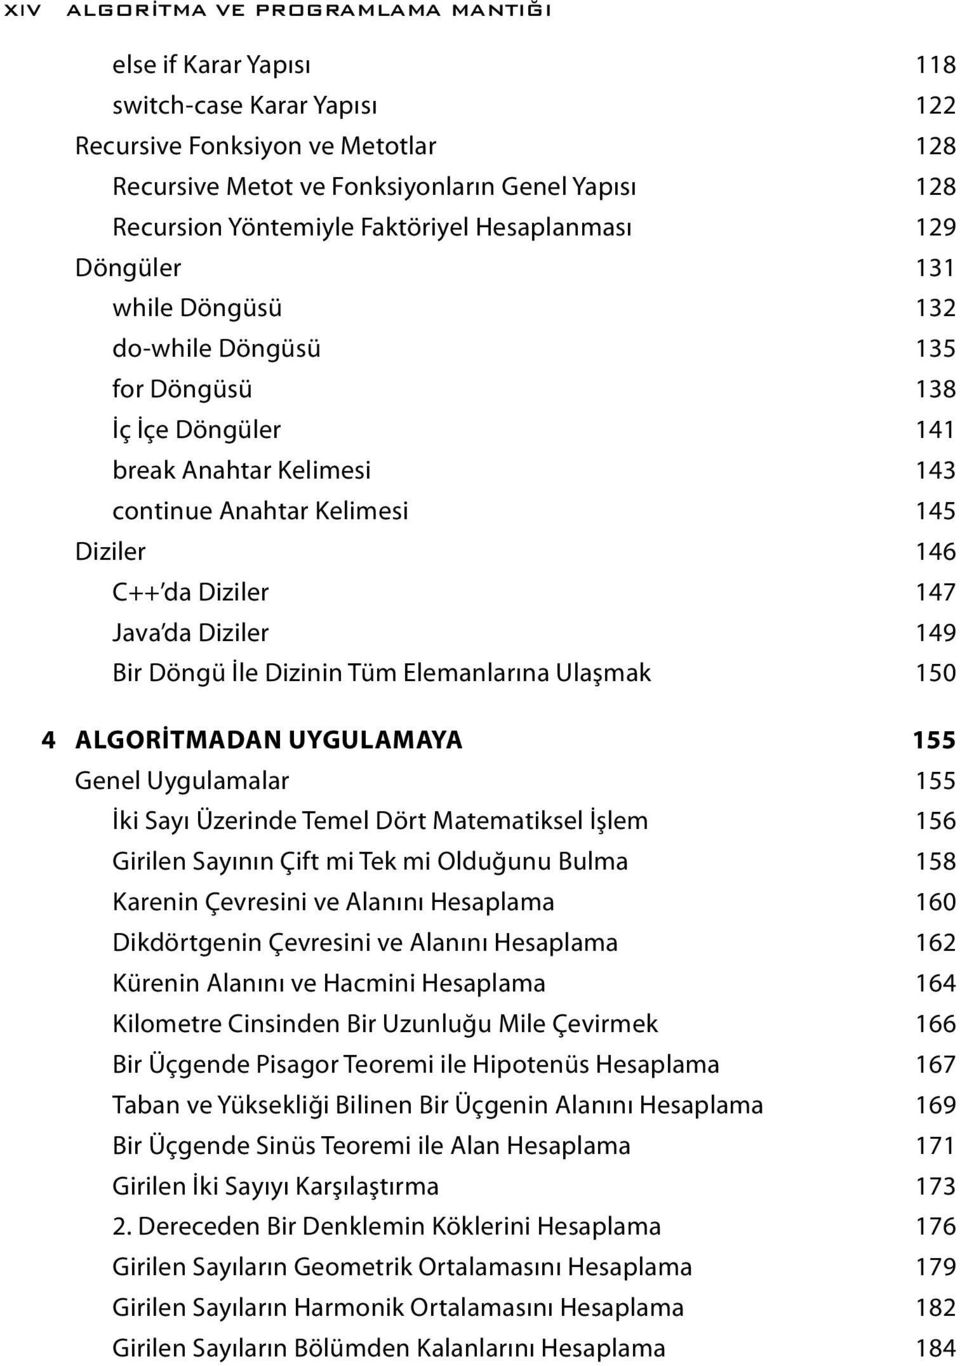 147 Java da Diziler 149 Bir Döngü İle Dizinin Tüm Elemanlarına Ulaşmak 150 4 ALGORİTMADAN UYGULAMAYA 155 Genel Uygulamalar 155 İki Sayı Üzerinde Temel Dört Matematiksel İşlem 156 Girilen Sayının Çift